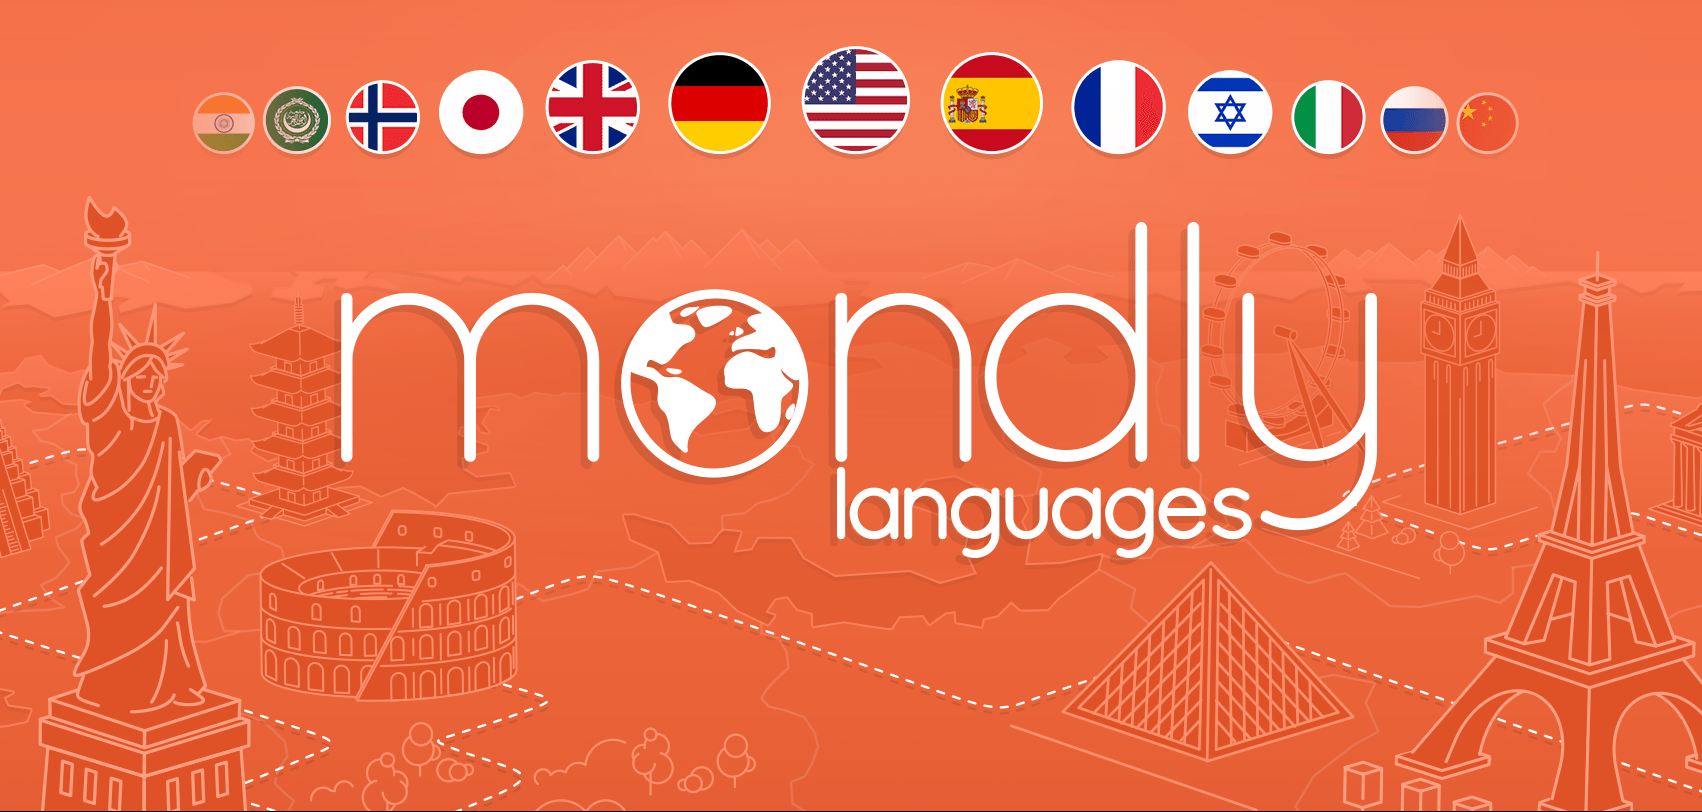 Ini Rekomendasi Buat Kamu Yang Ingin Belajar Bahasa Arab Melalui Aplikasi